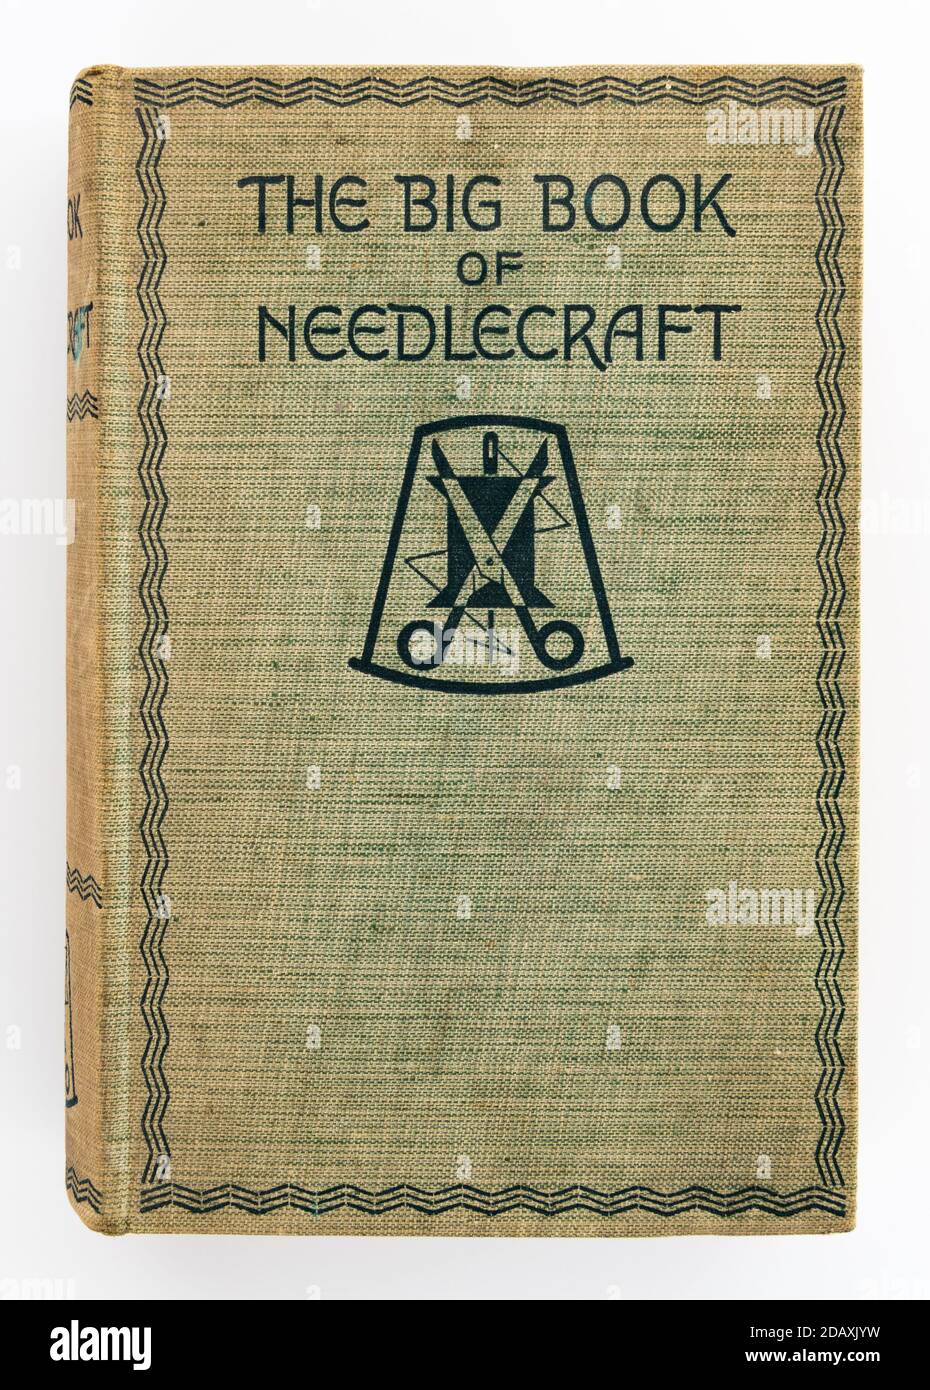 Le Grand Livre de l'édition 1935 de needlecraft Banque D'Images